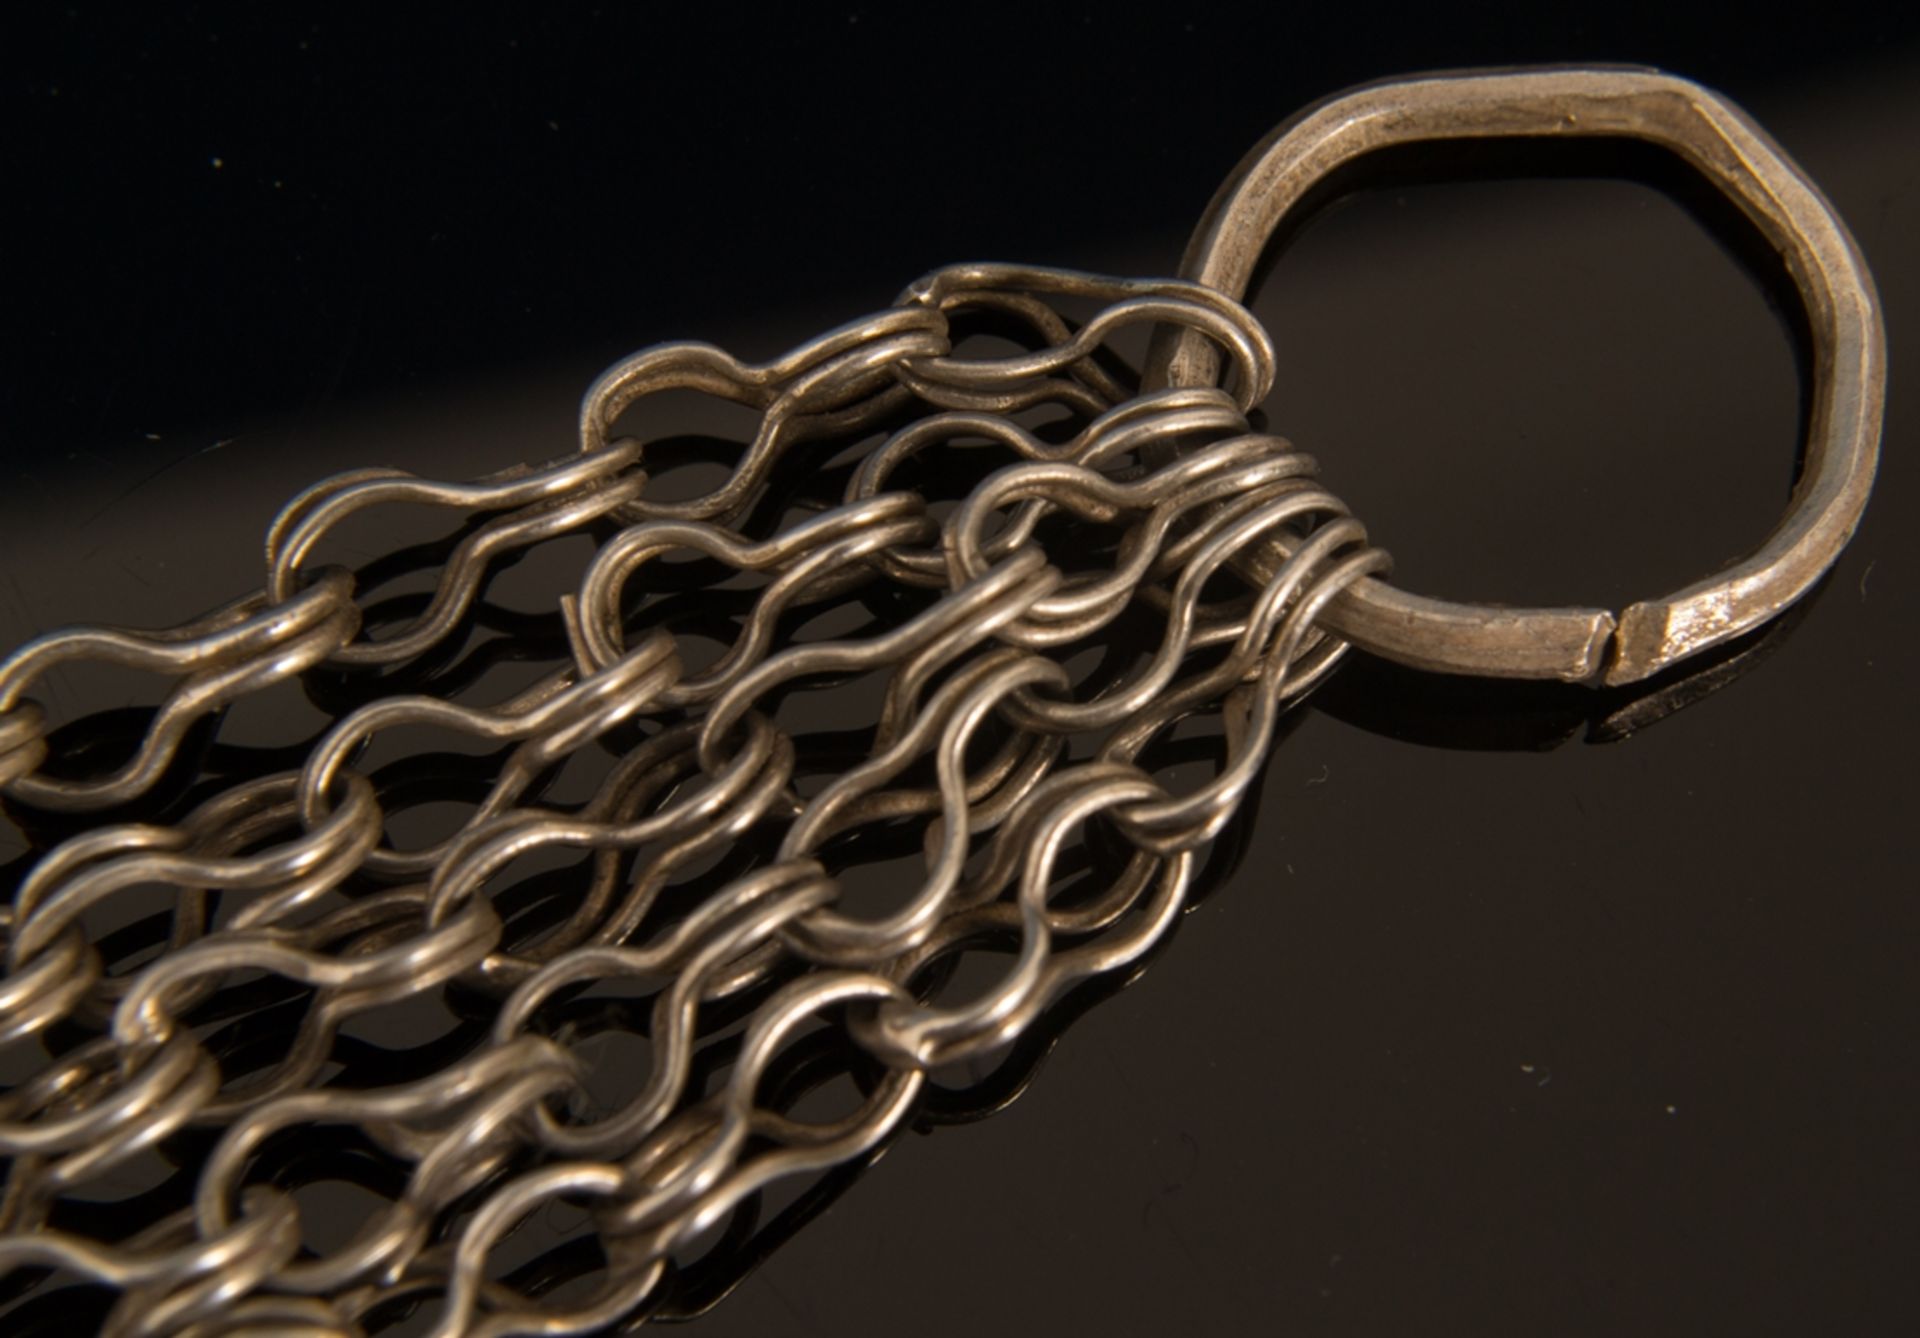 Gliederarmband aus dem Oman. Silber, teilweise vergoldet, ungestempelt. Länge ca. 35 cm. - Bild 7 aus 11